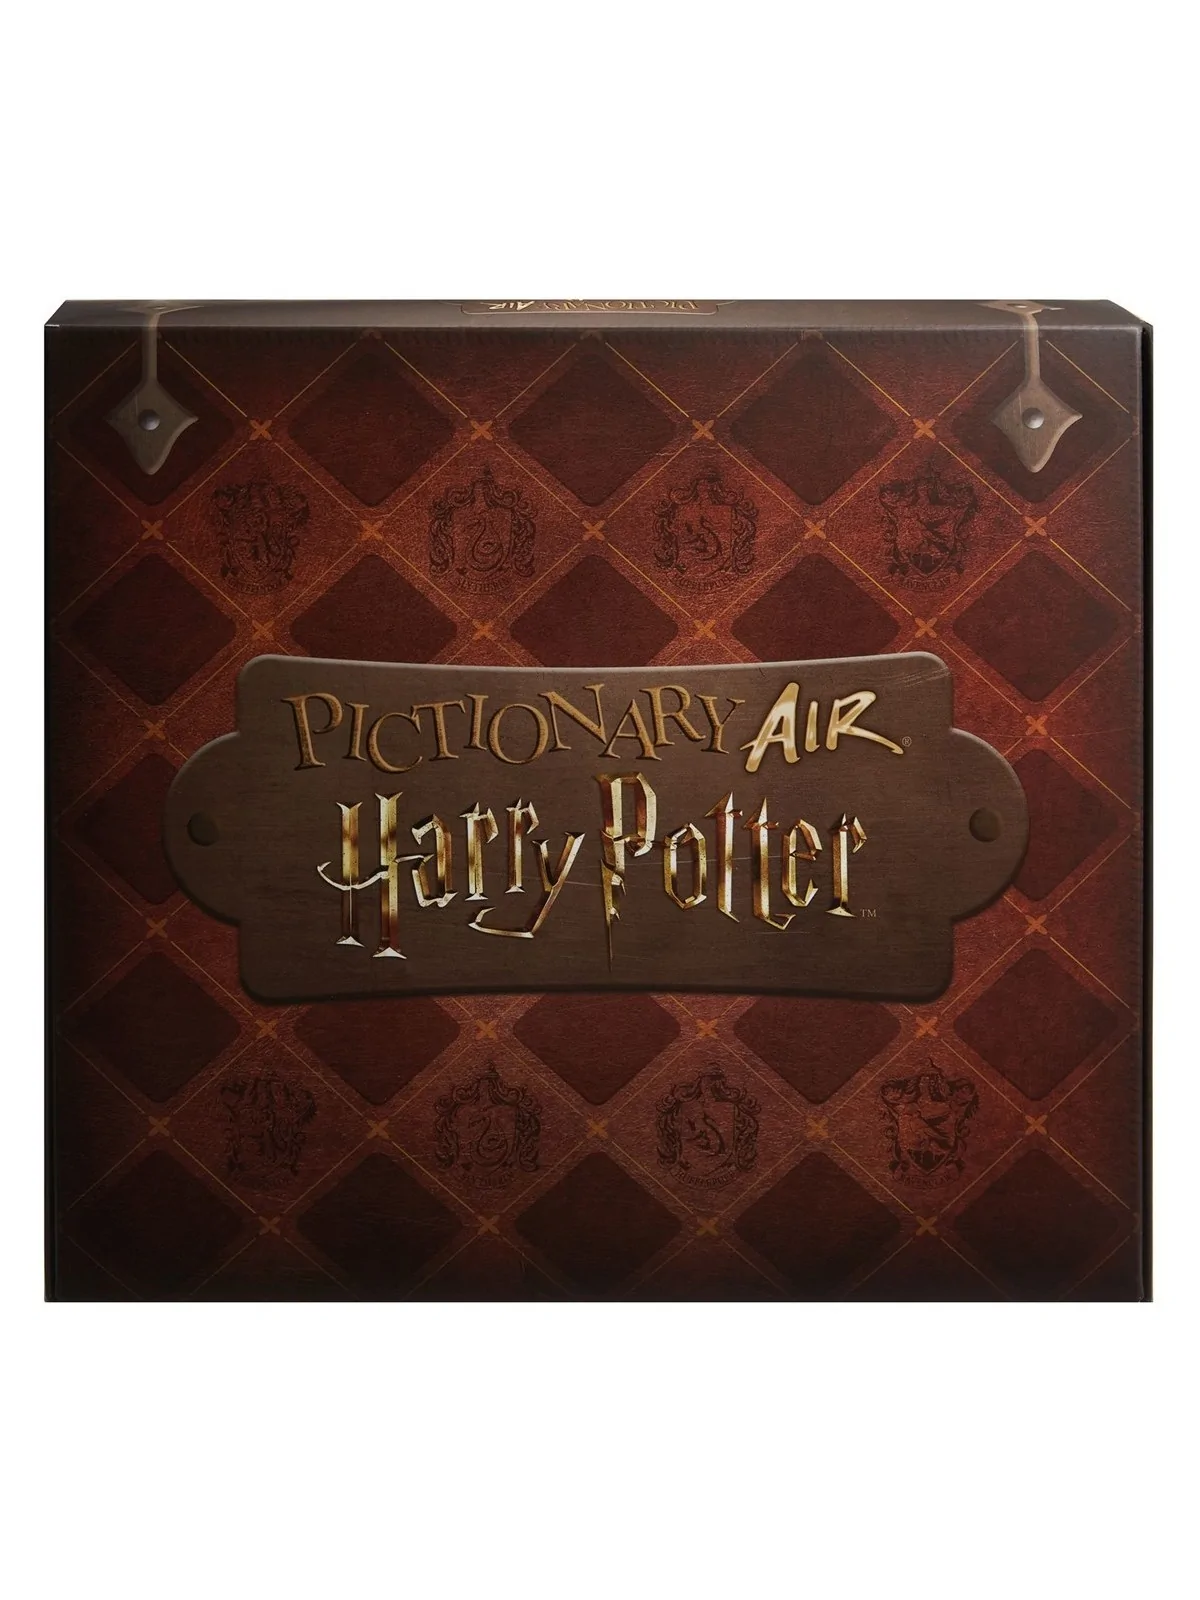 Comprar Pictionary: Air Harry Potter barato al mejor precio 27,12 € de